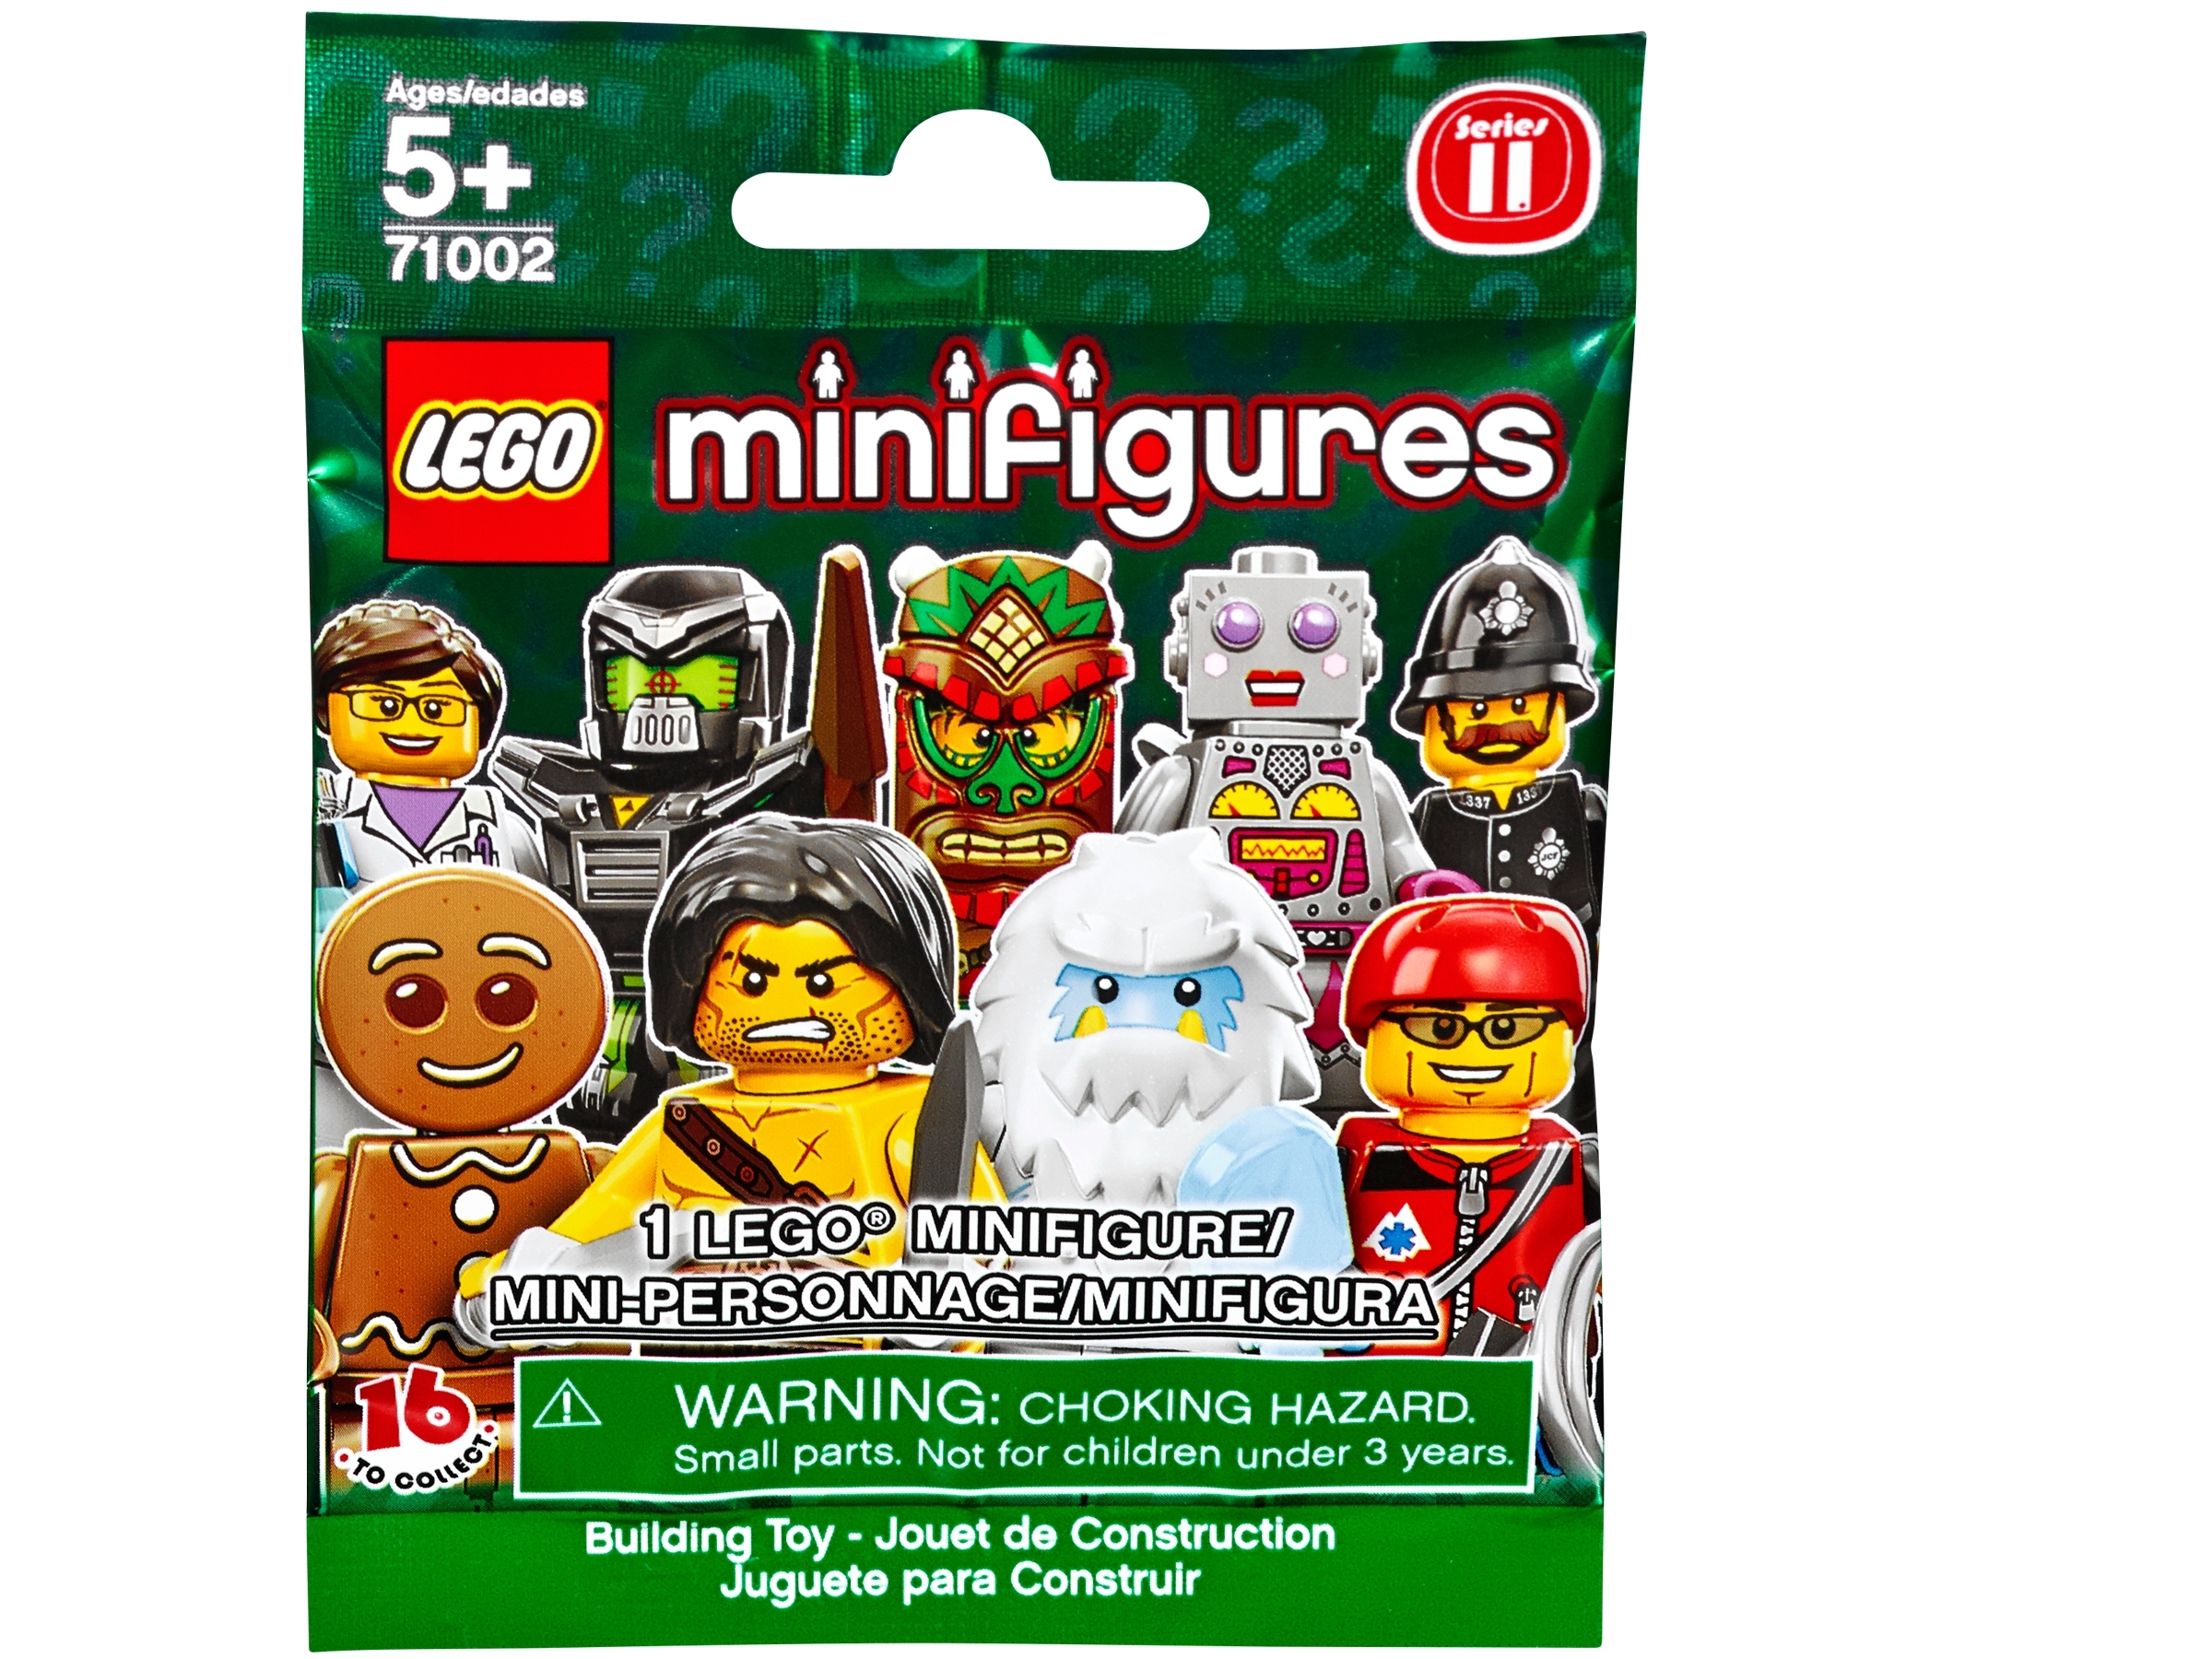 Lego Minifigur Serie 11 Schweißer 71002 kaufen jeden 3 Get 4th Free